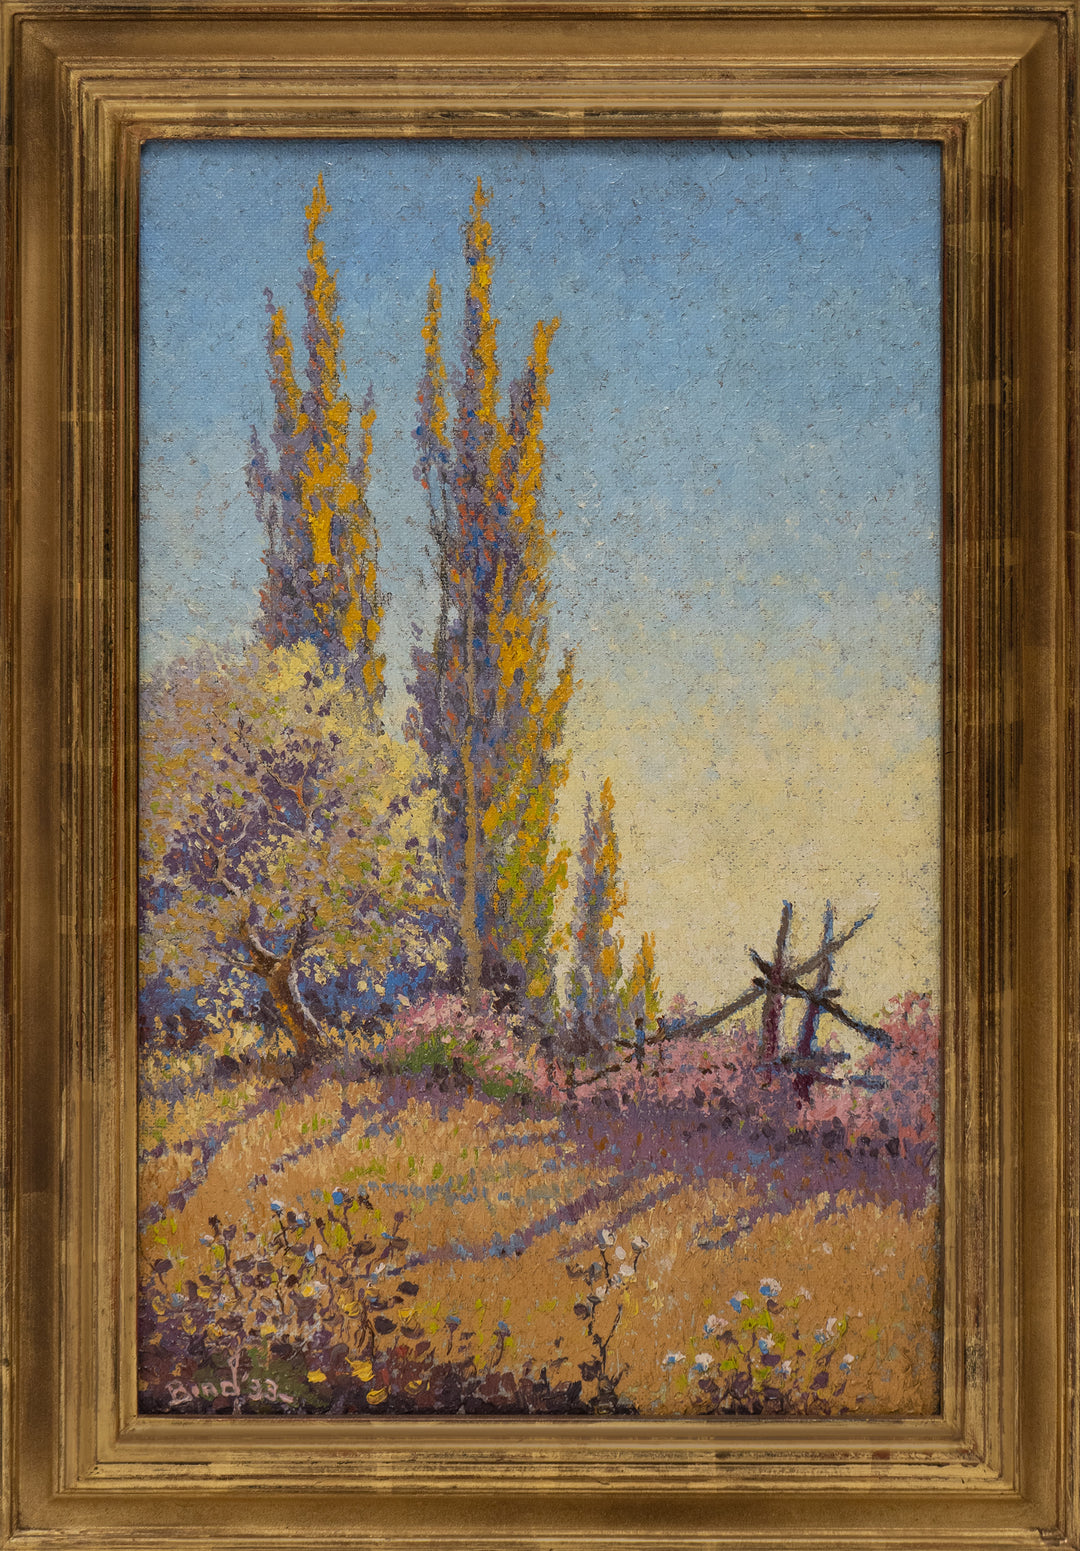 Golden Poplars, (1933) by E. J. Bird